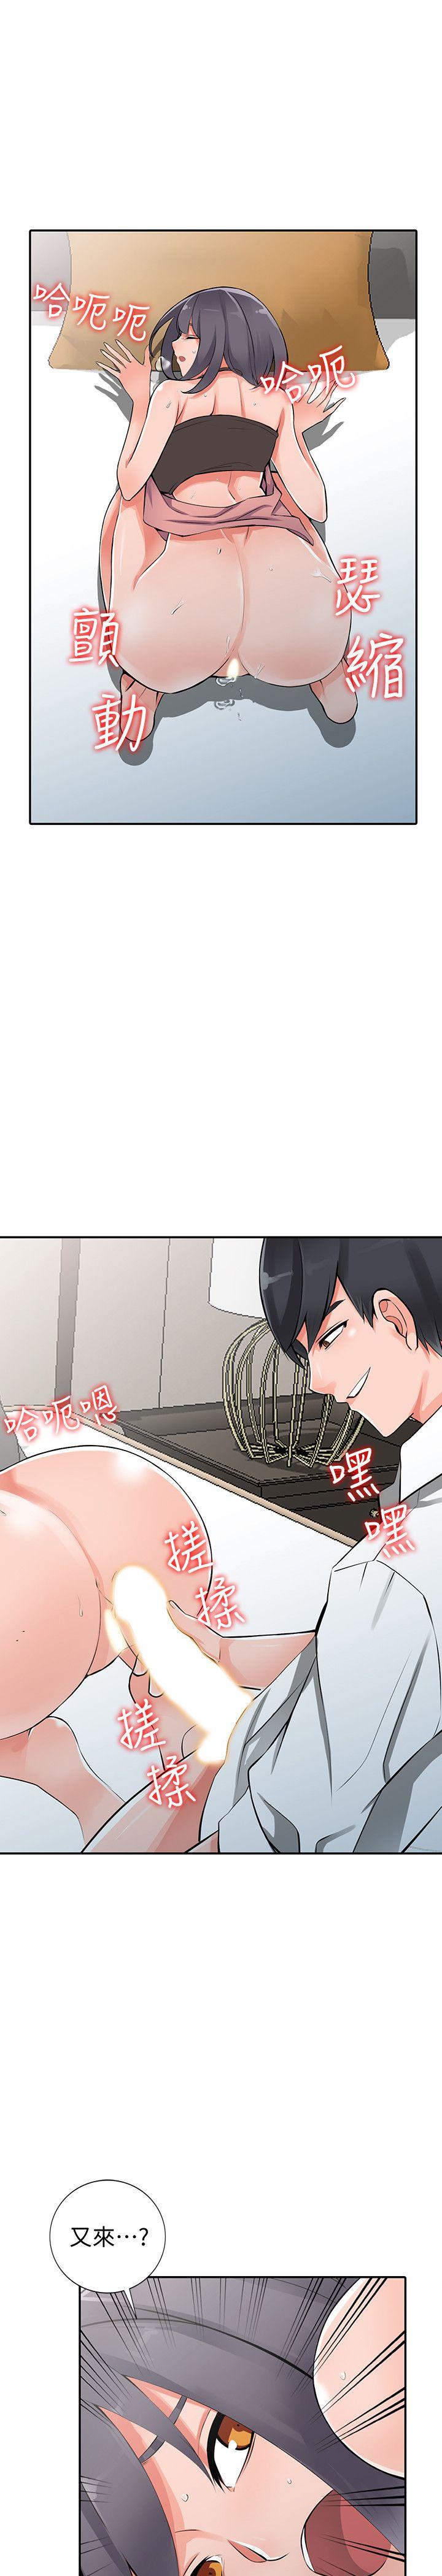 《异乡人:意外桃花源》漫画 第27话-青春肉体果然美味